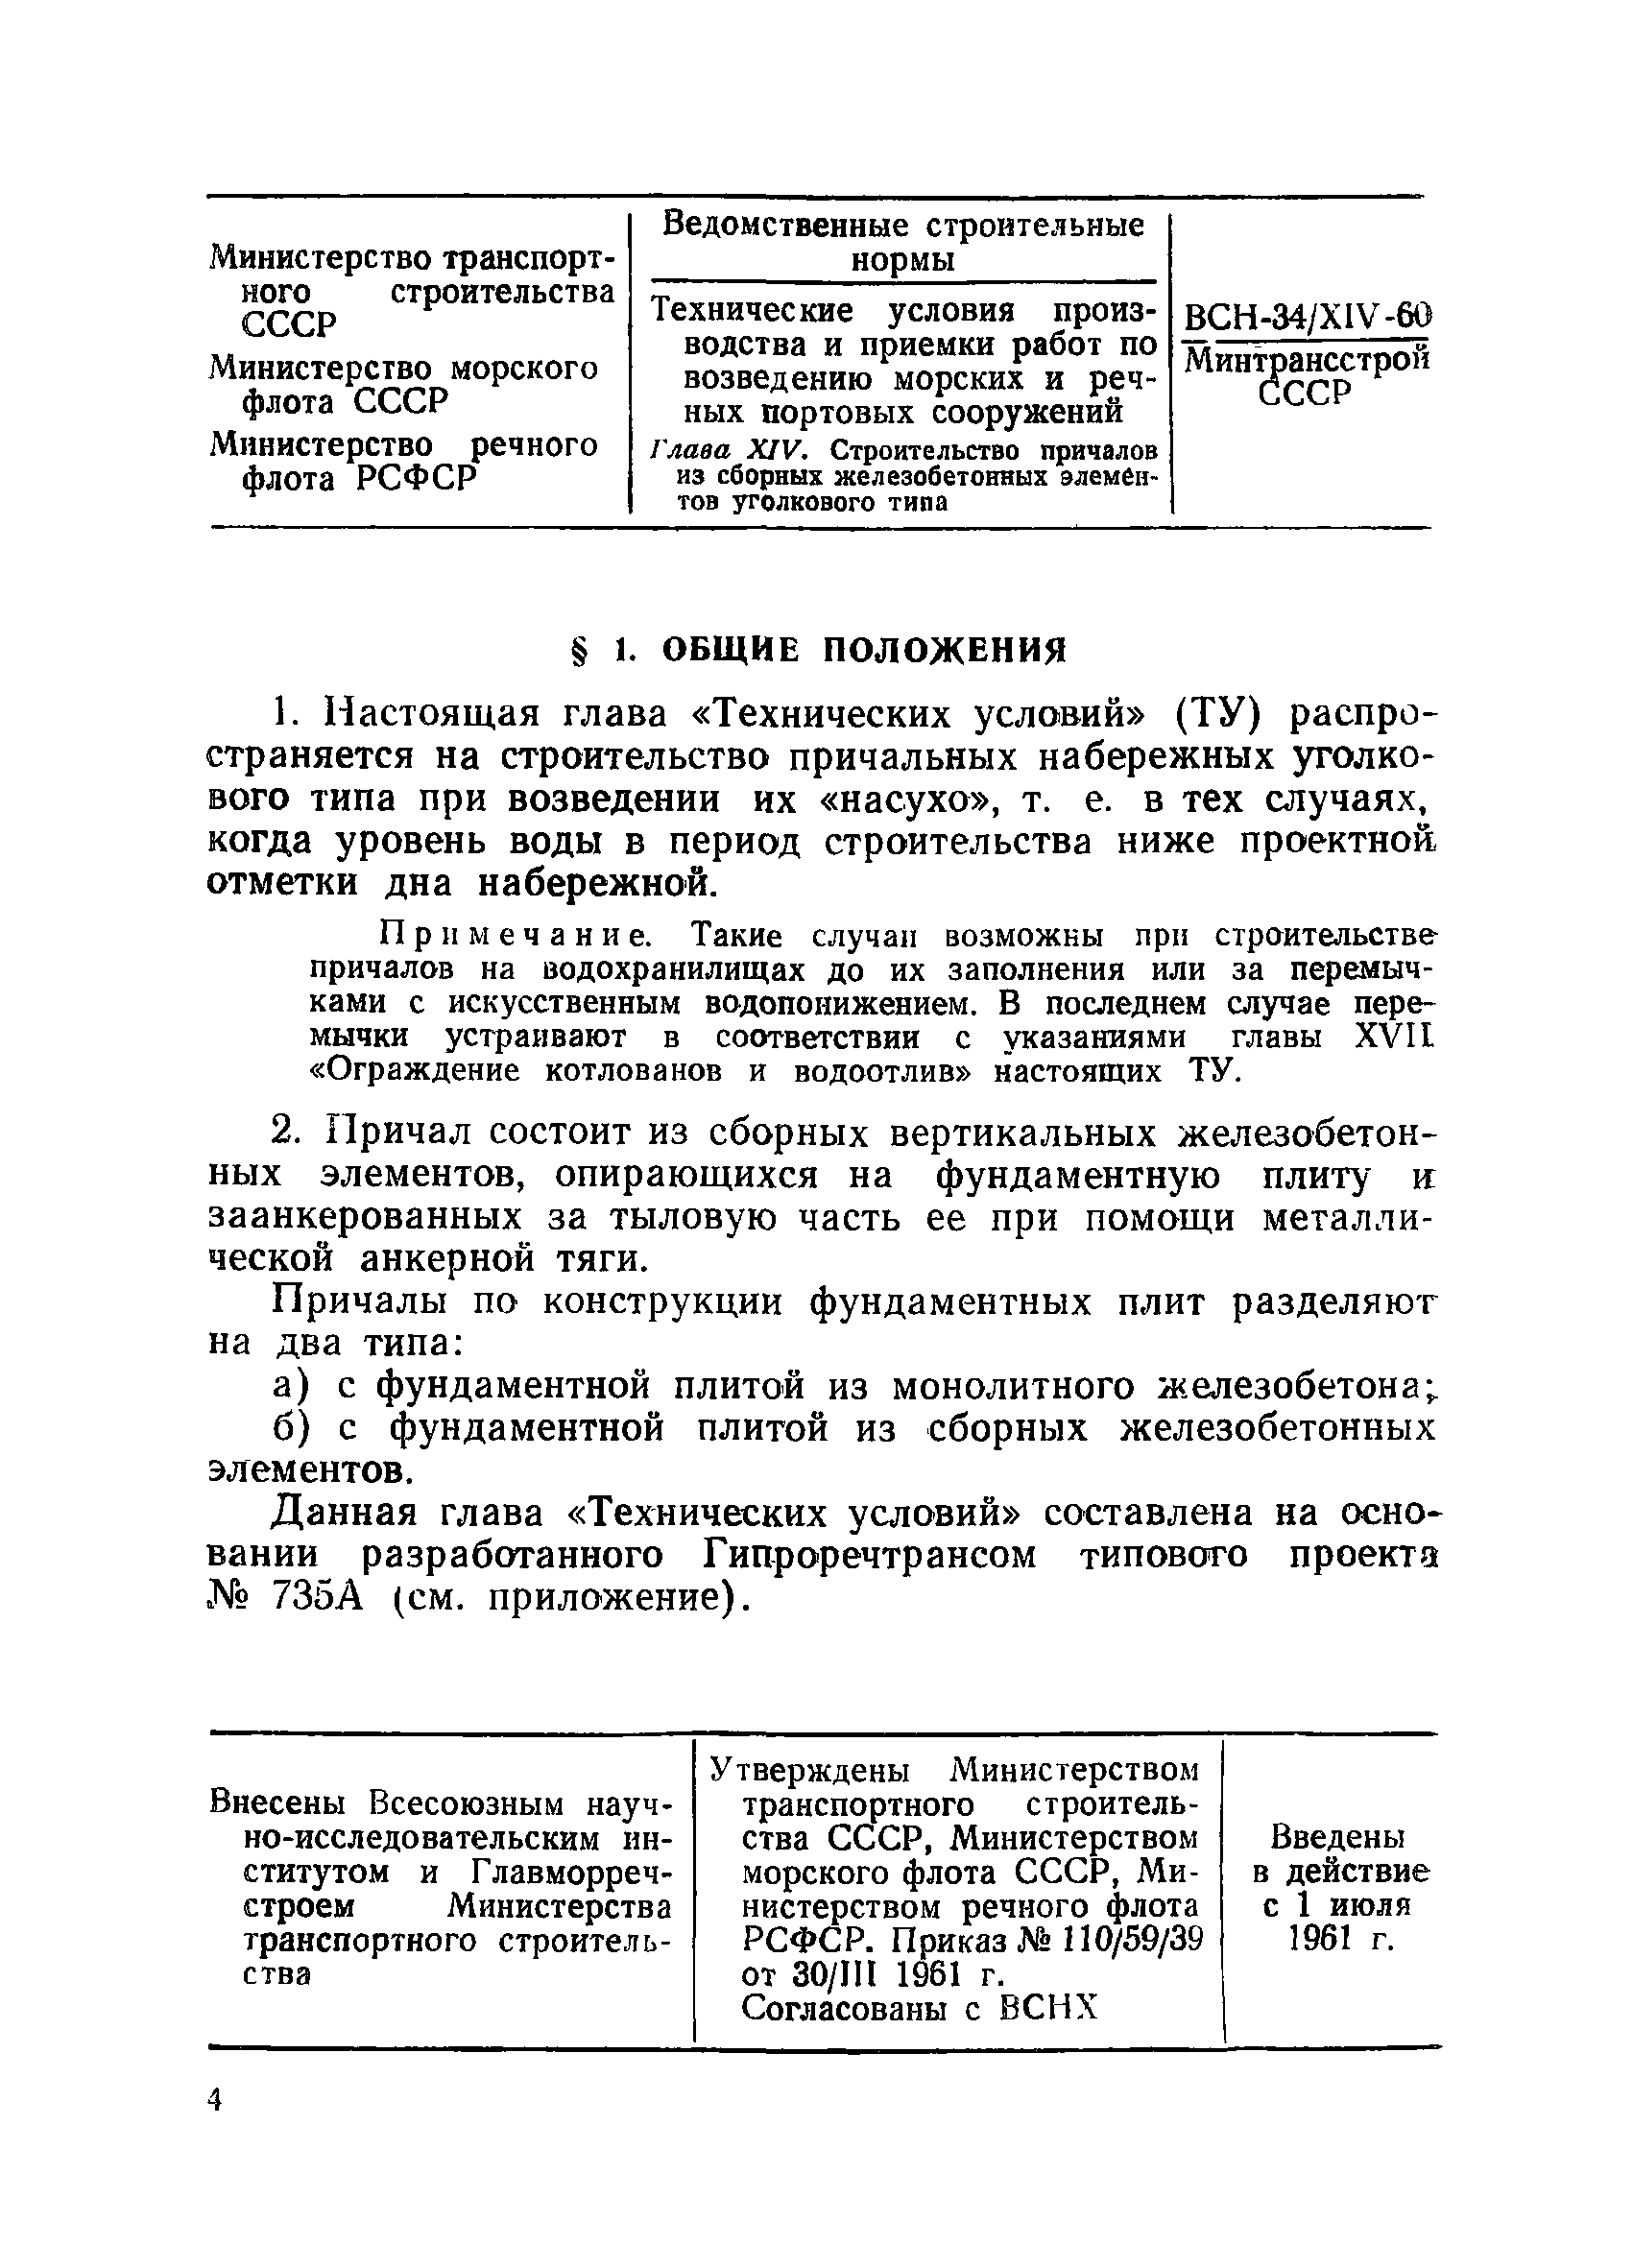 ВСН 34/XIV-60